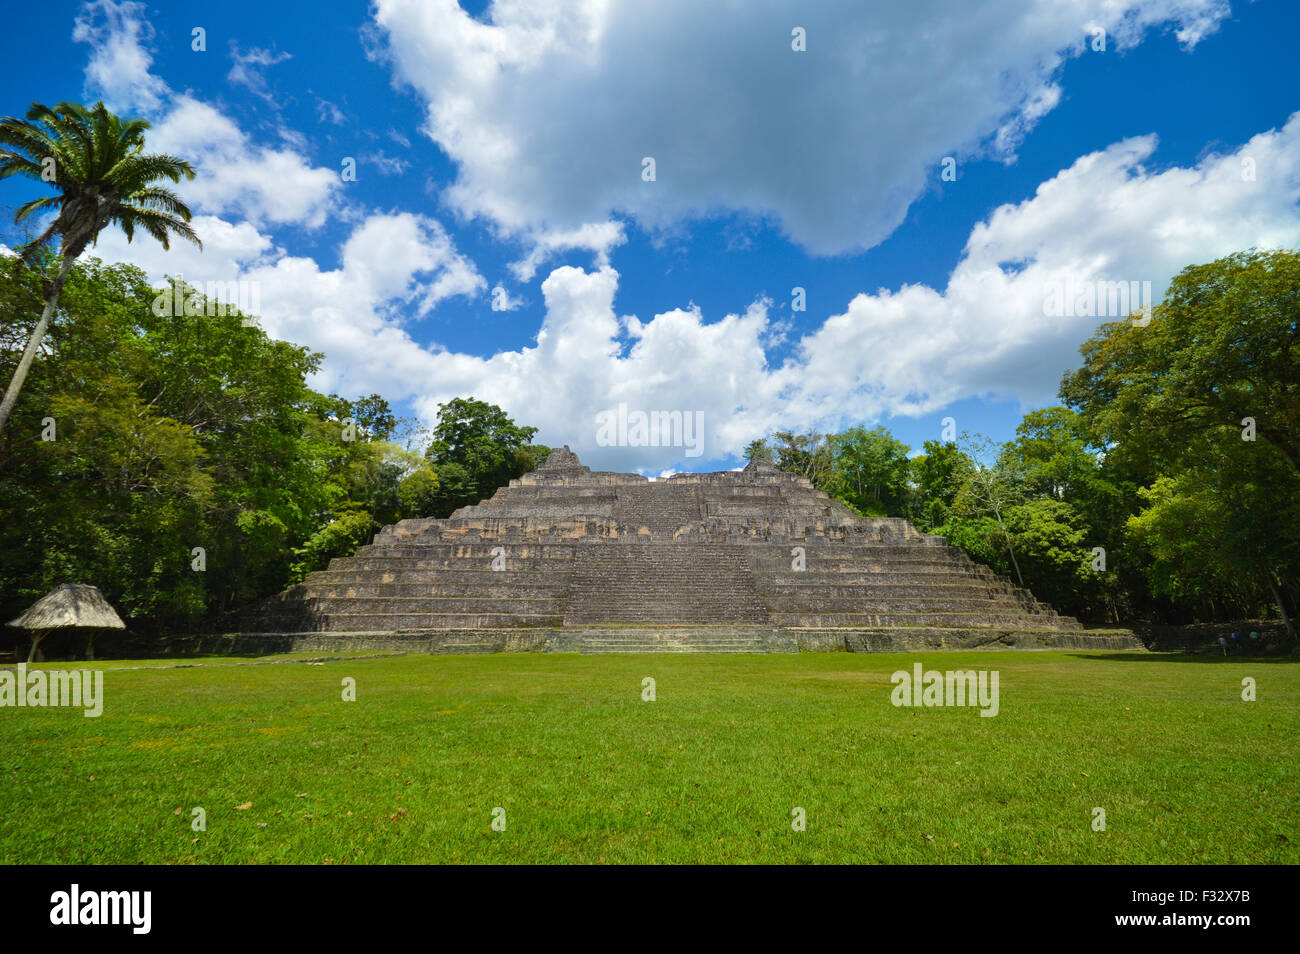 Pyramide Caana à Caracol site archéologique de la civilisation maya dans l'ouest de Belize Banque D'Images